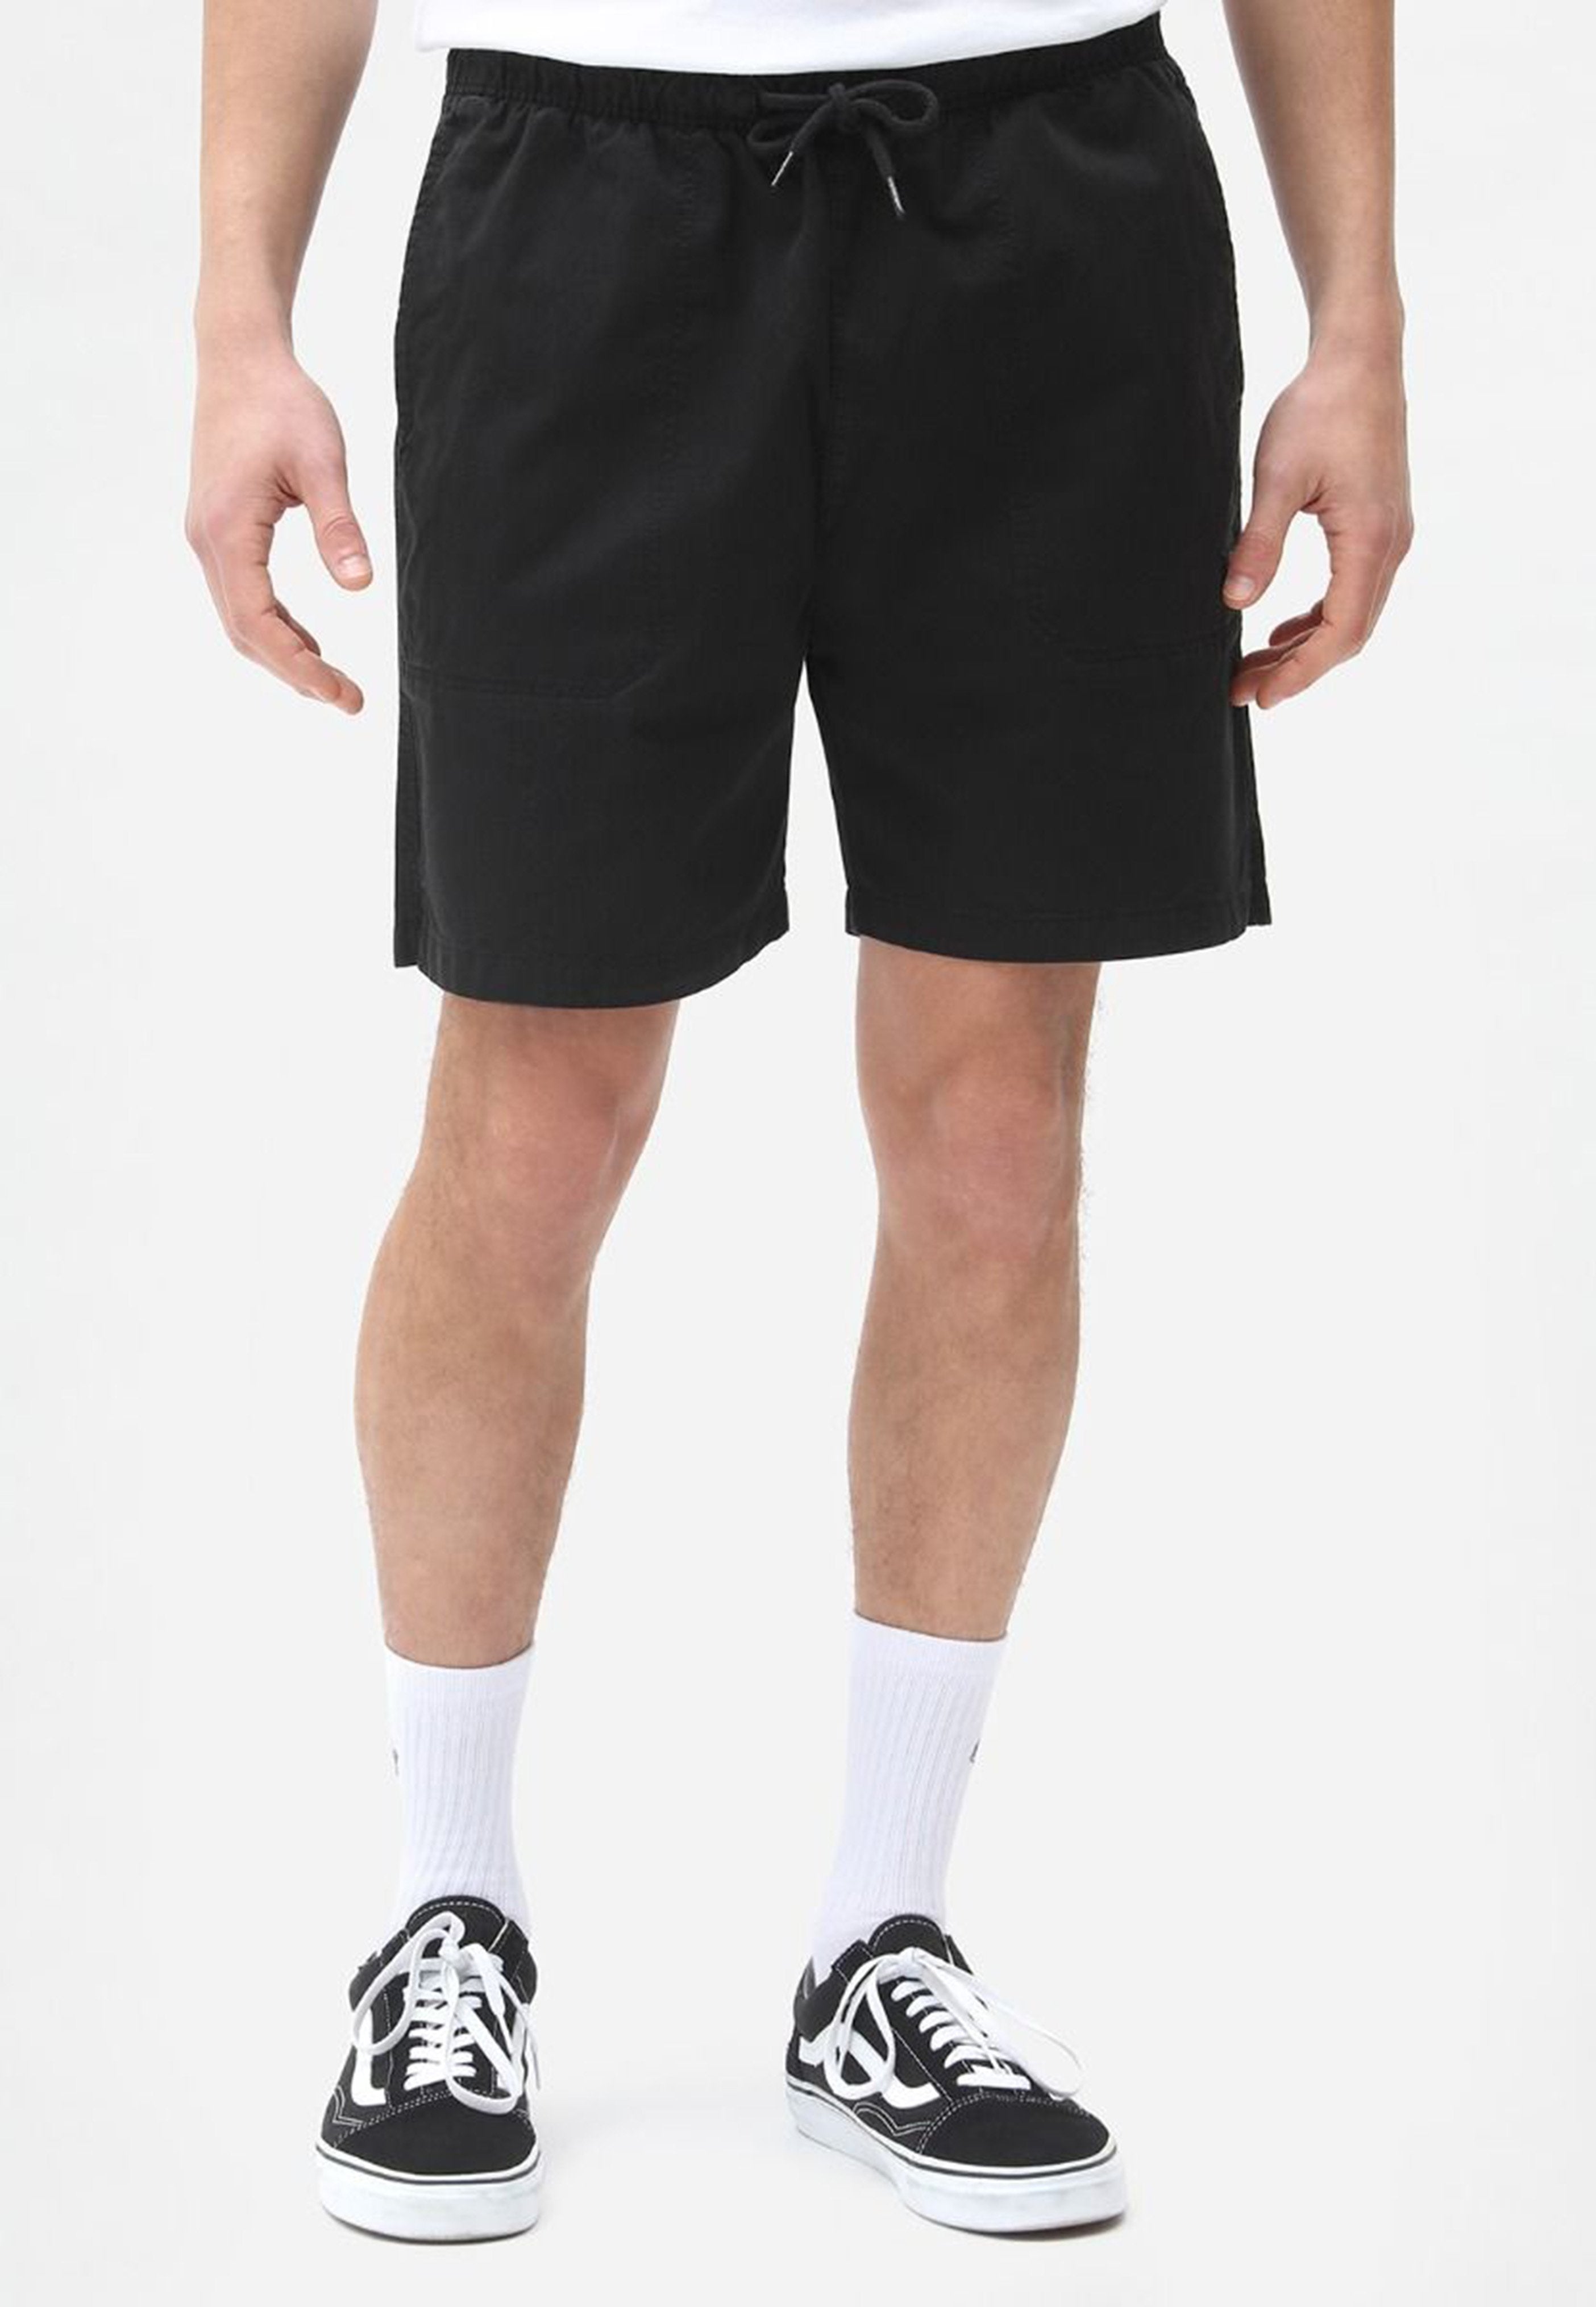 Dickies - Pelican Rapids Black - Shorts